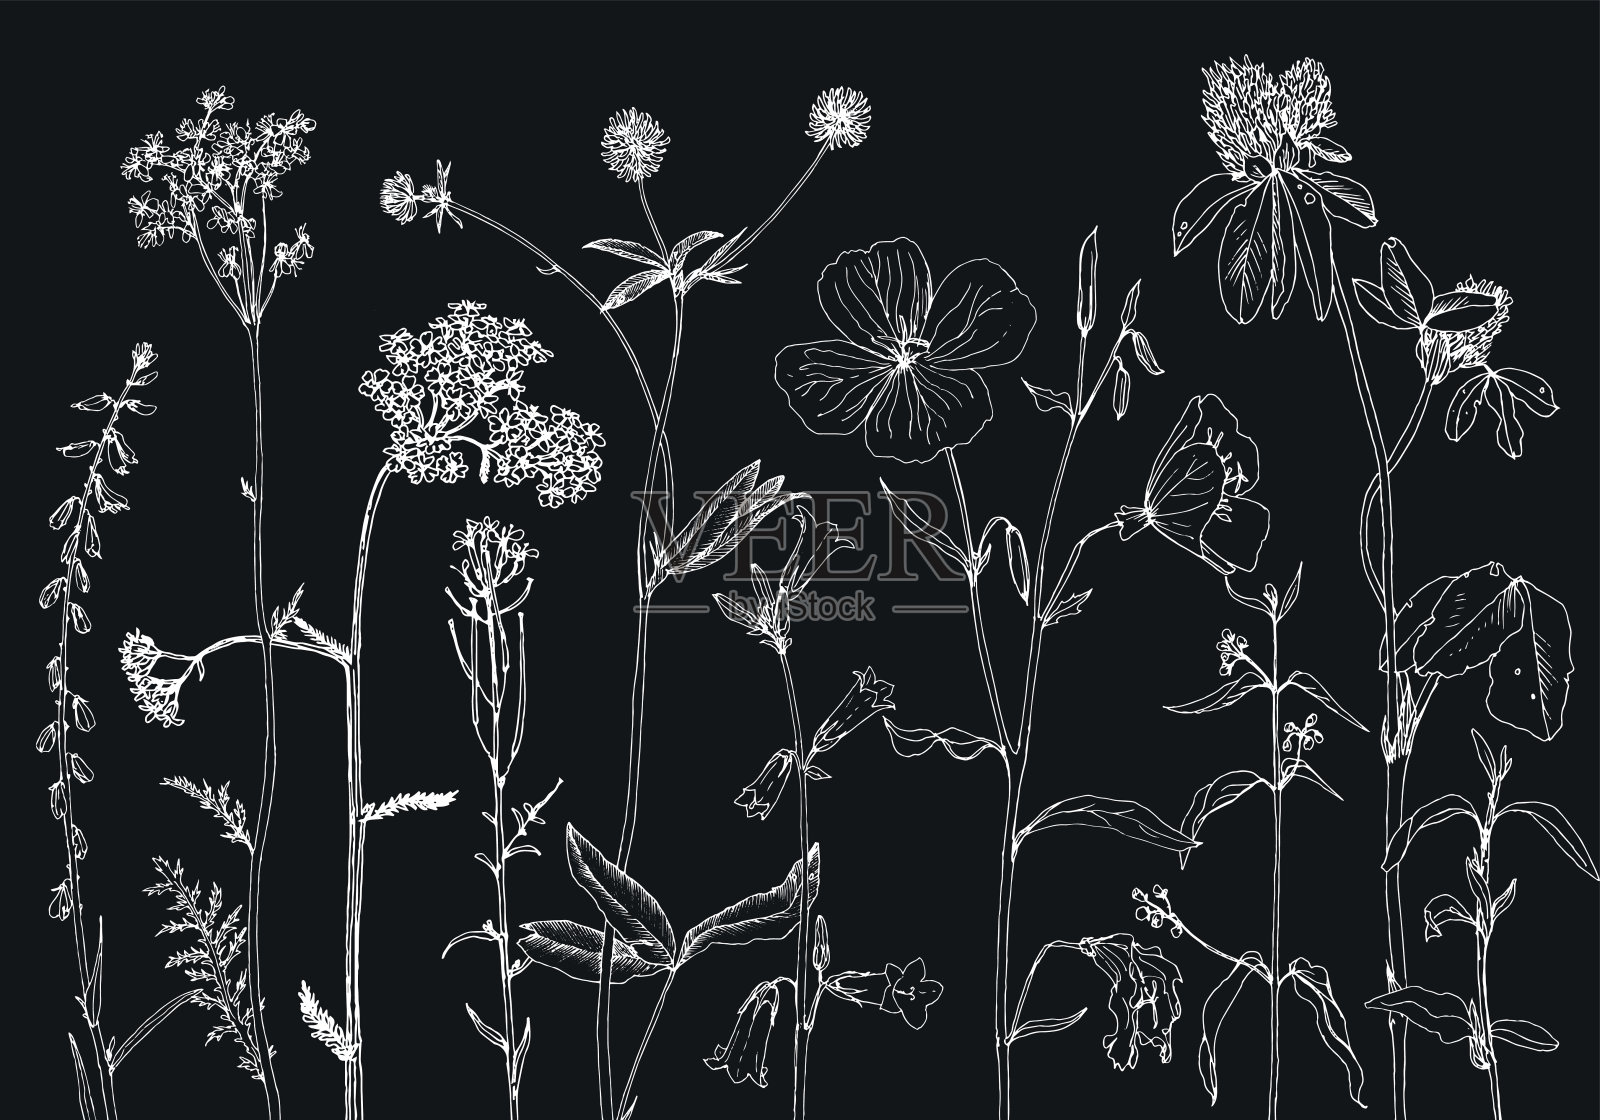 背景与绘制草本和花卉插画图片素材